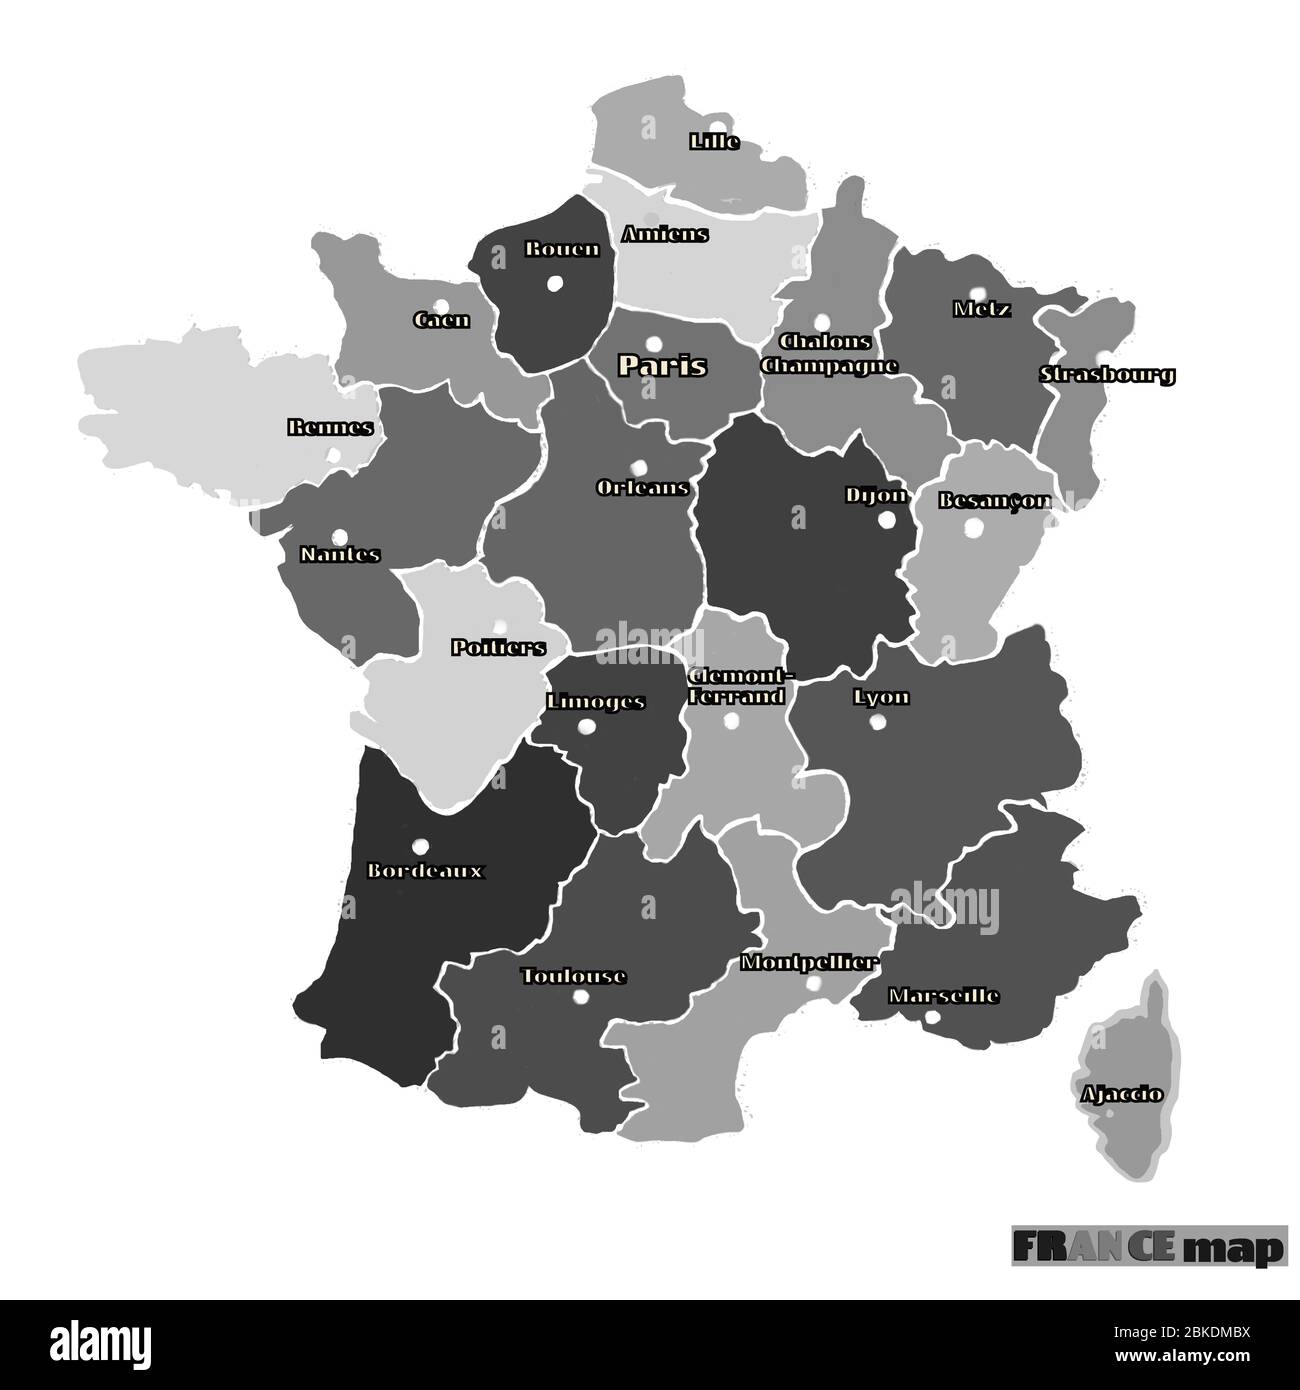 Mapa de Francia ilustración gráfica brillante. Dibujo hecho a mano. Ilustración en blanco y negro. Foto de stock